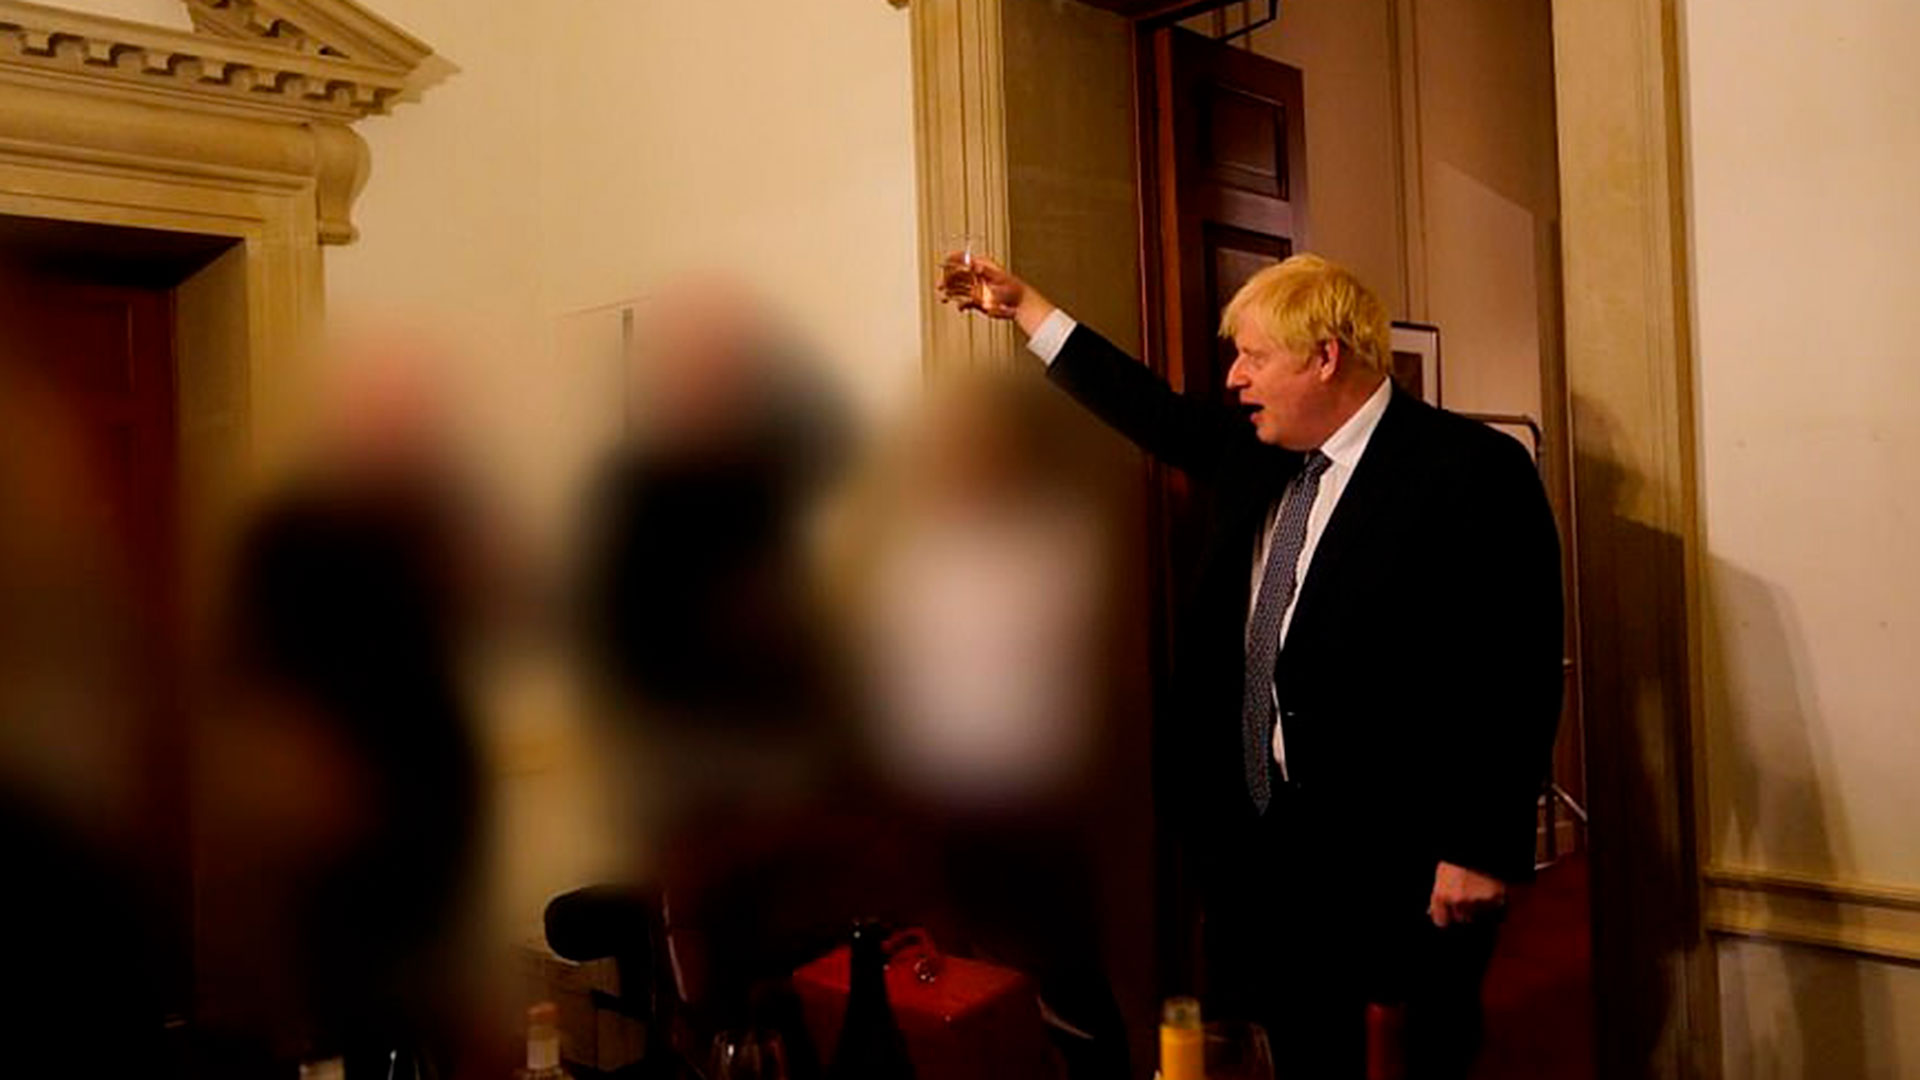 13 November 2020: Pertemuan di N10 Downing Street setelah kepergian seorang penasihat spesialis